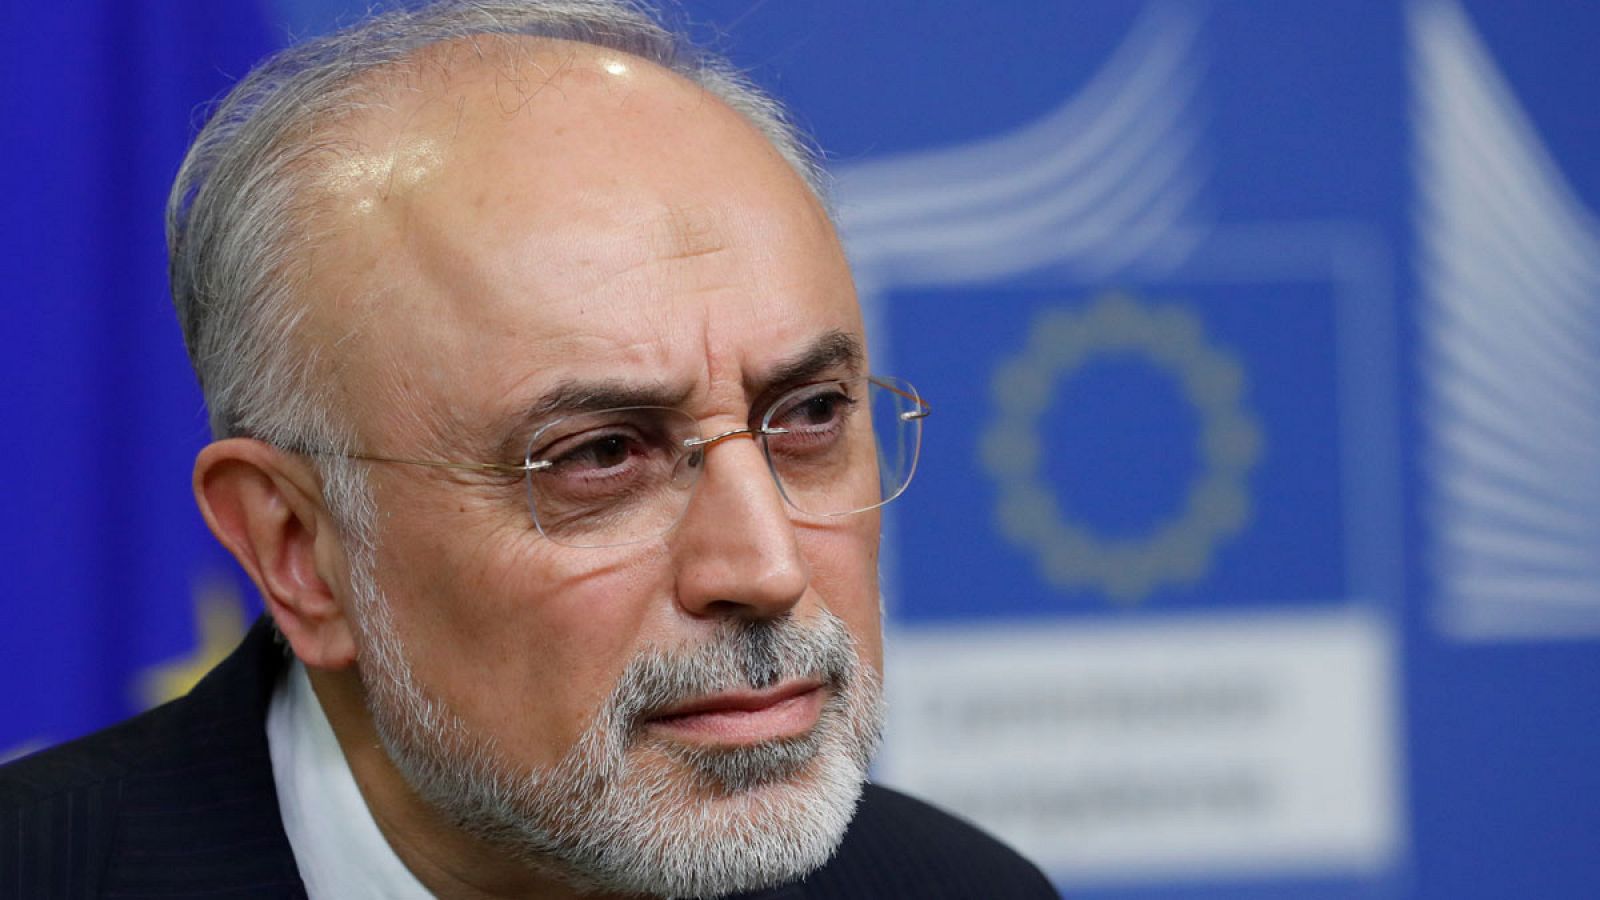 El jefe de la Agencia Iraní de Energía Atómica (AIEA), Ali-Akbar Salehi, en una imagen de noviembre de 2018 en Bruselas (Bélgica).